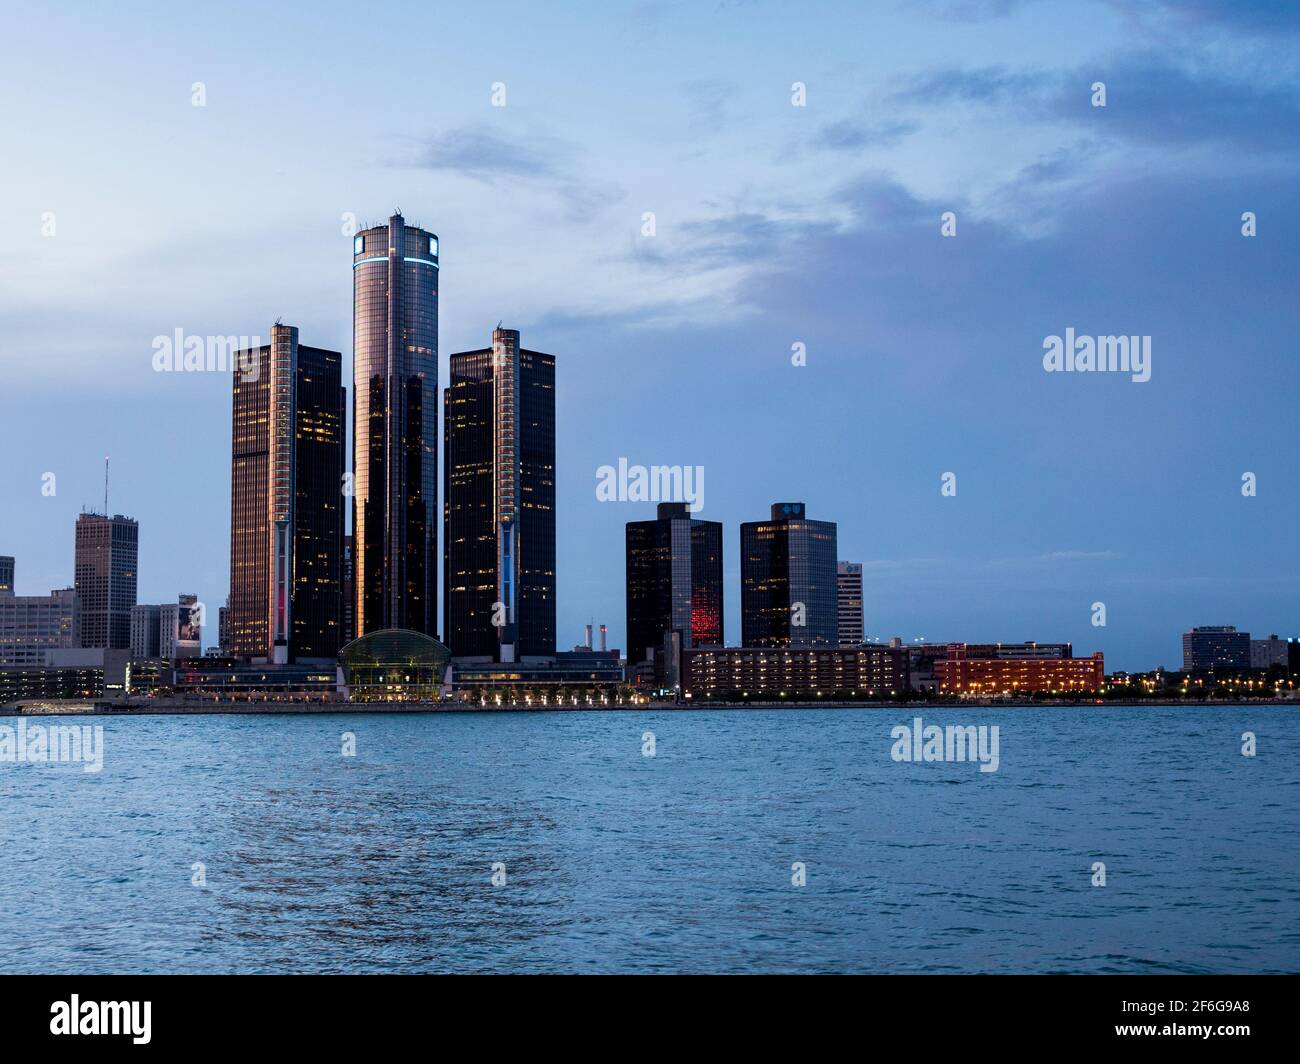 Nach dem Glühen auf dem Renaissance Center in der Innenstadt von Detroit Michigan: Nach dem Sonnenuntergang beginnen die hohen Gebäude des Renaissance Center dominiert von der GM-Turm in Detroit zu leuchten. Detroit River im Vordergrund. Stockfoto